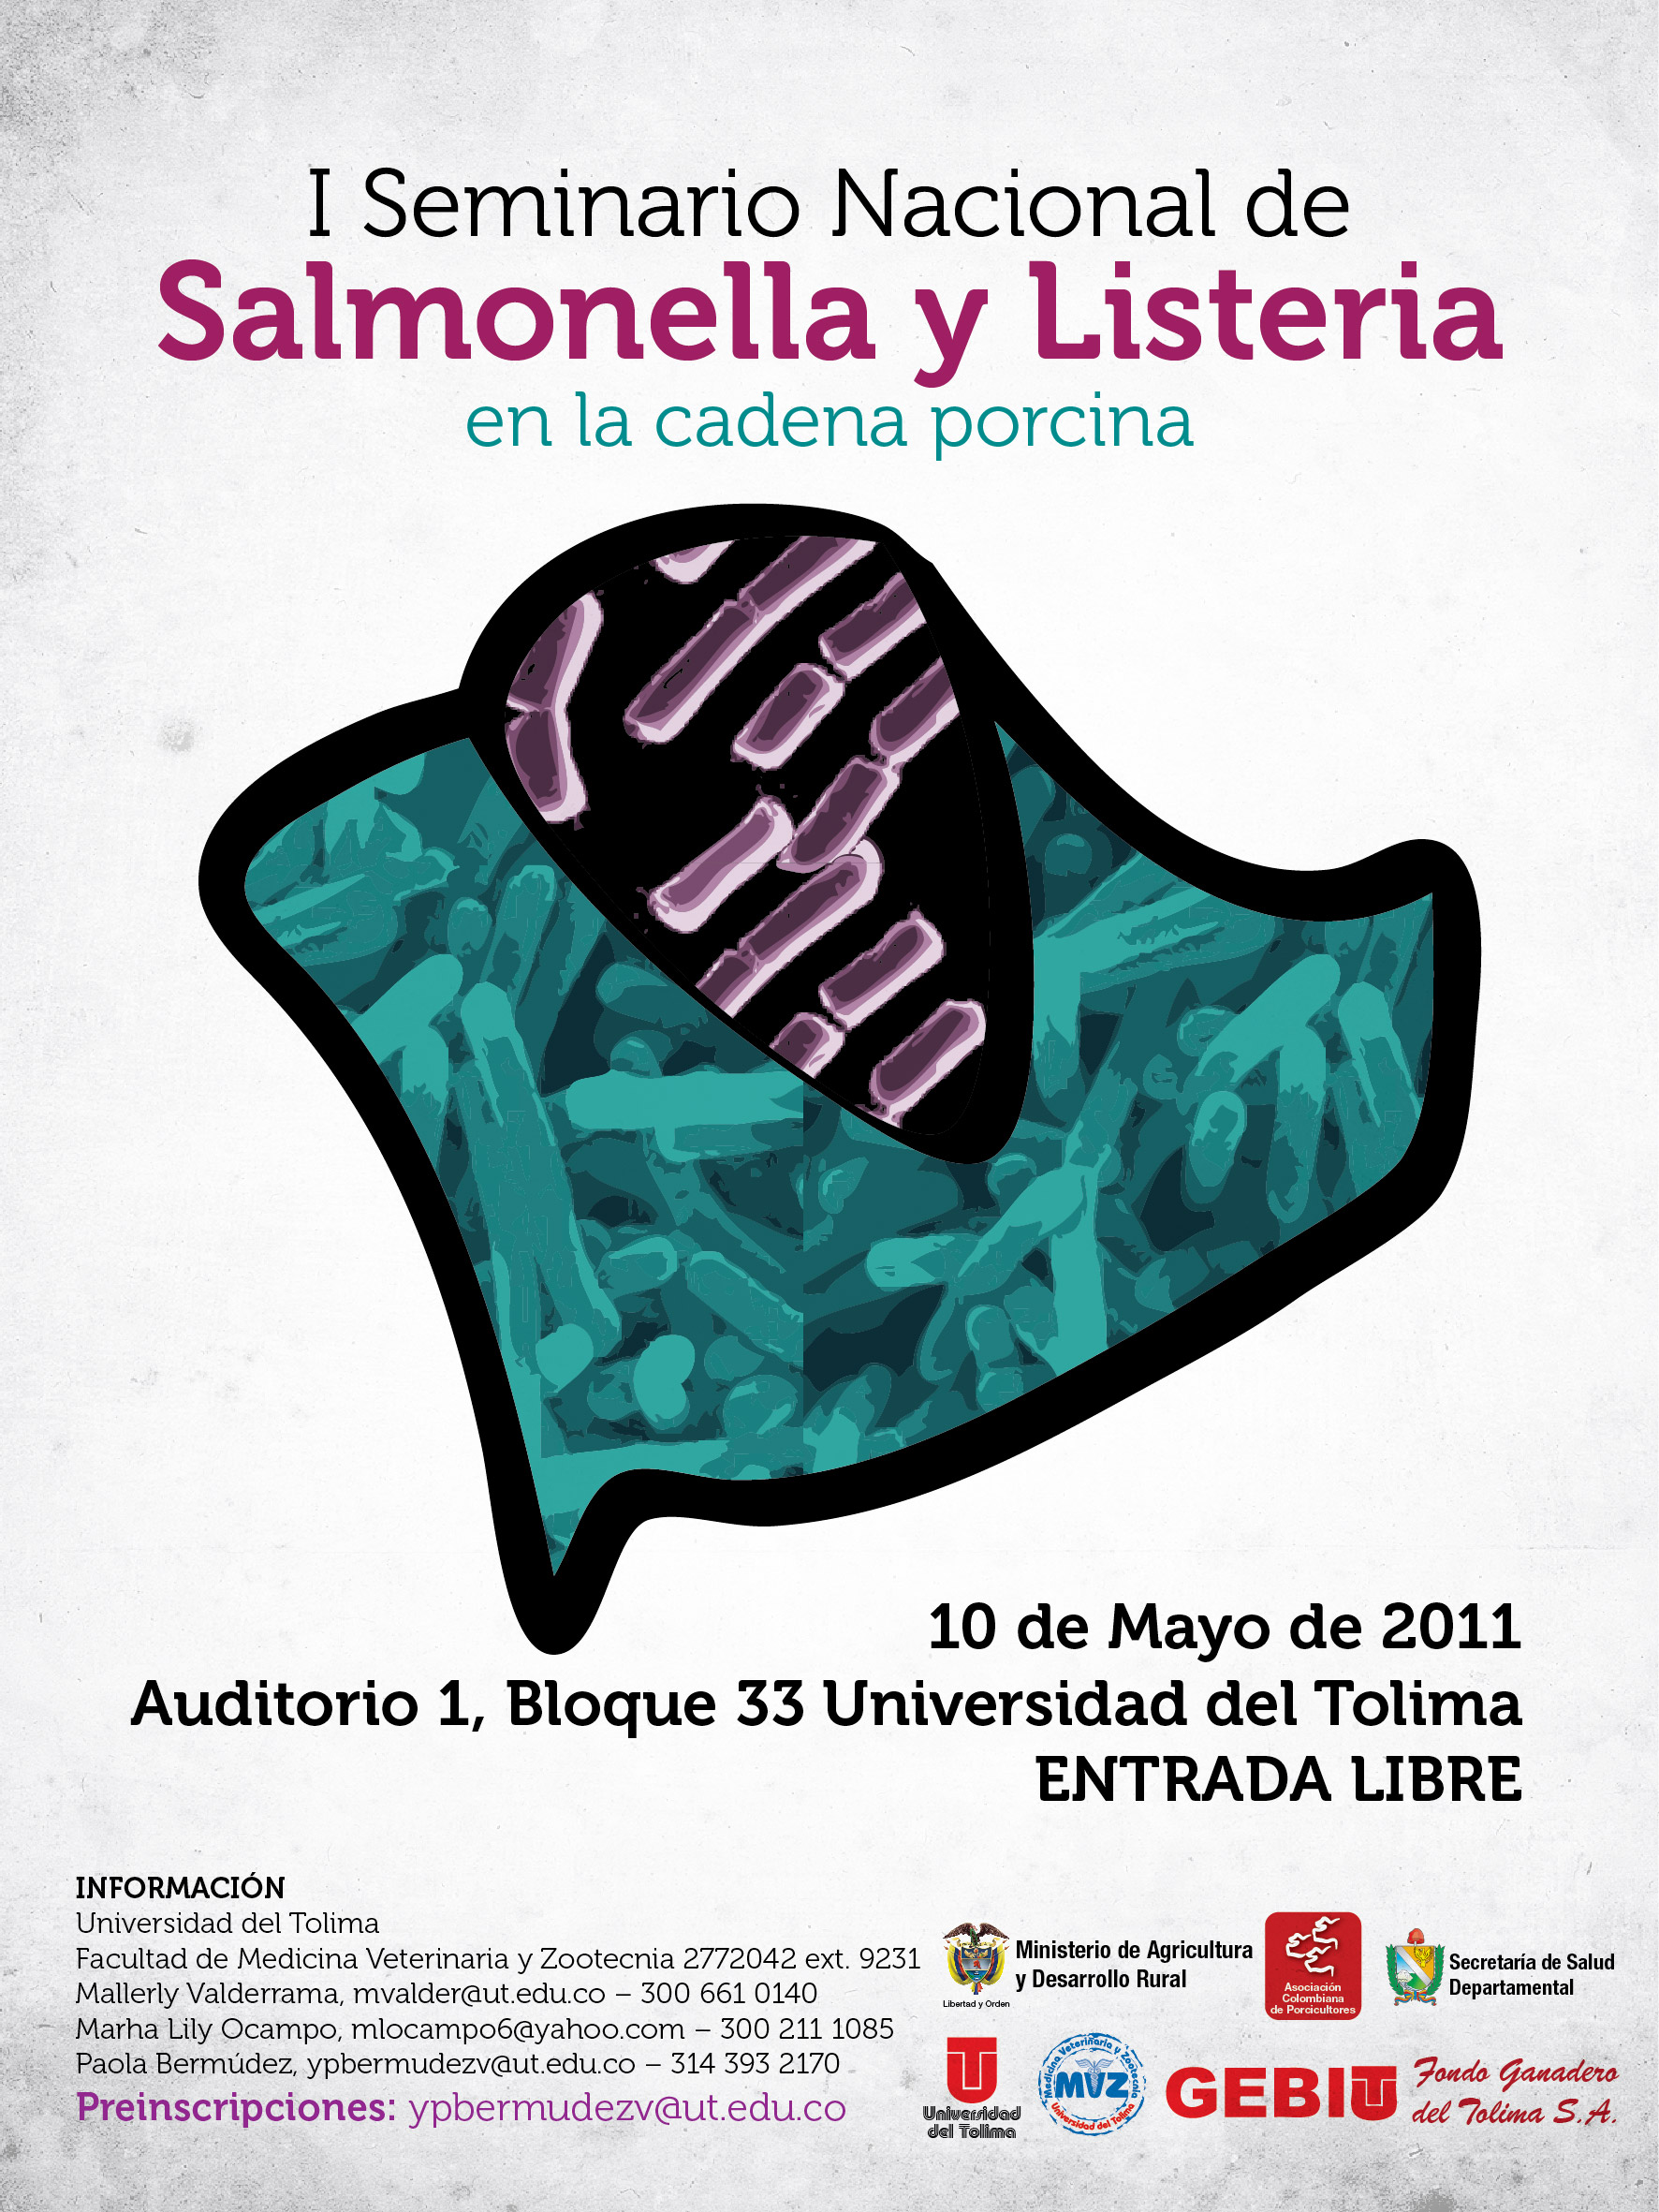 http://pcweb.info/wp-content/uploads/2011/04/I-Seminario-Nacional-de-Salmonella-y-Listeria-Afiche-01.jpg